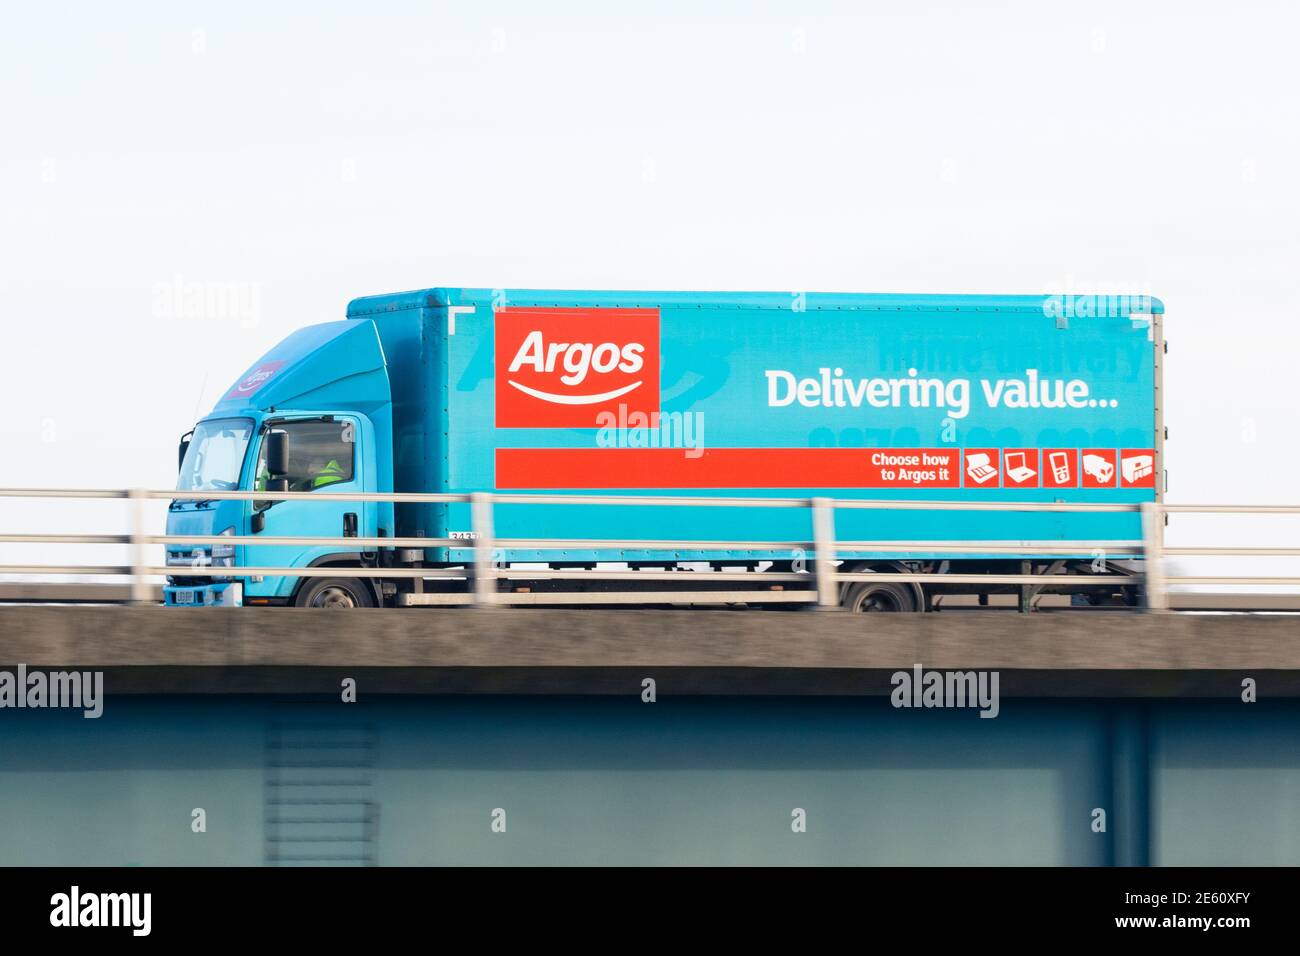 Camion de livraison Argos - Écosse, Royaume-Uni Banque D'Images